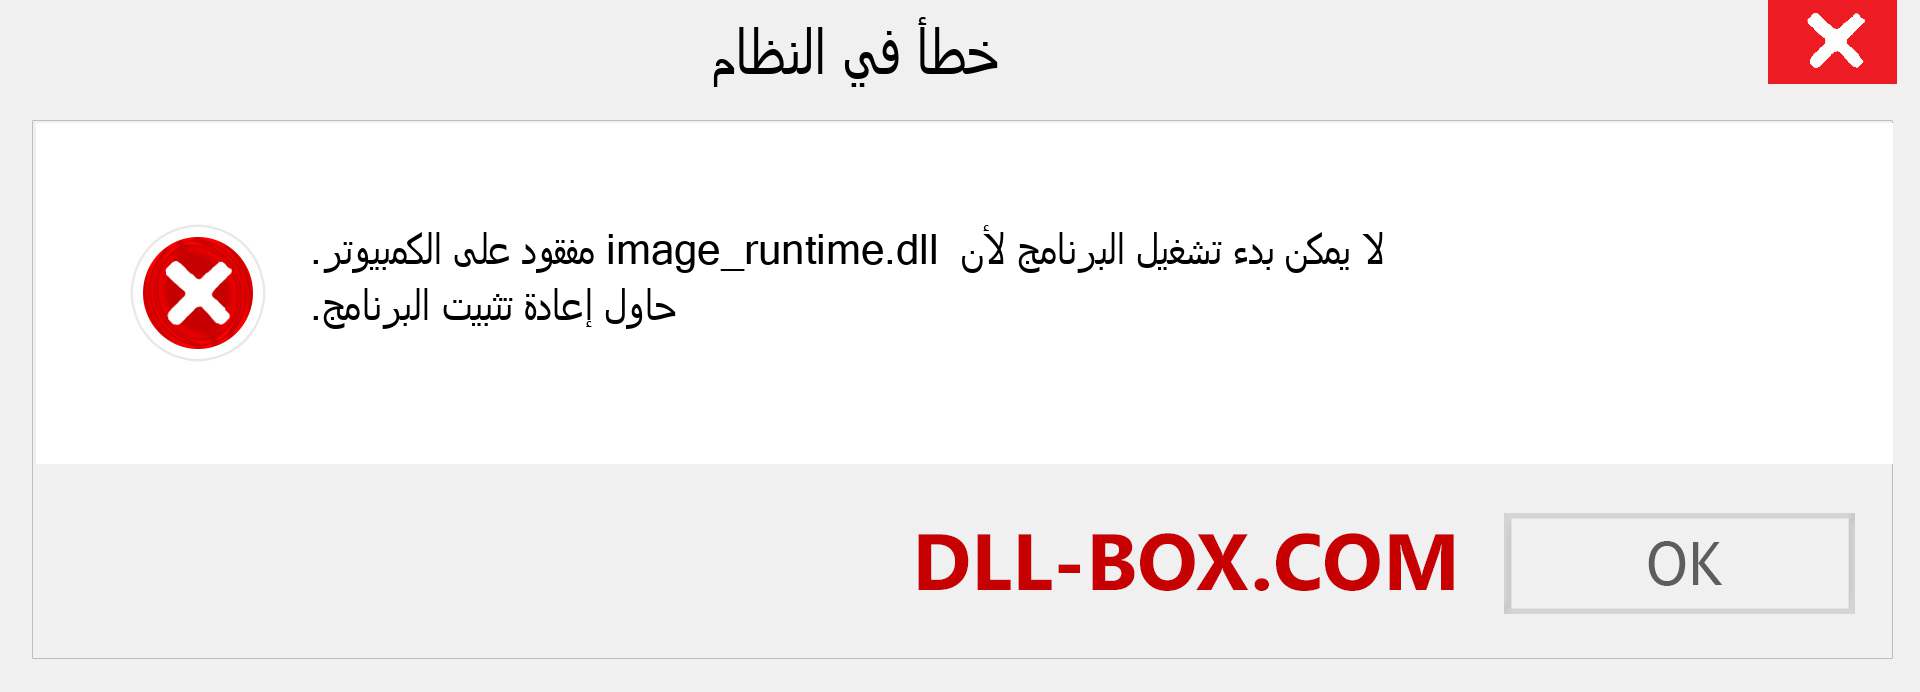 ملف image_runtime.dll مفقود ؟. التنزيل لنظام التشغيل Windows 7 و 8 و 10 - إصلاح خطأ image_runtime dll المفقود على Windows والصور والصور